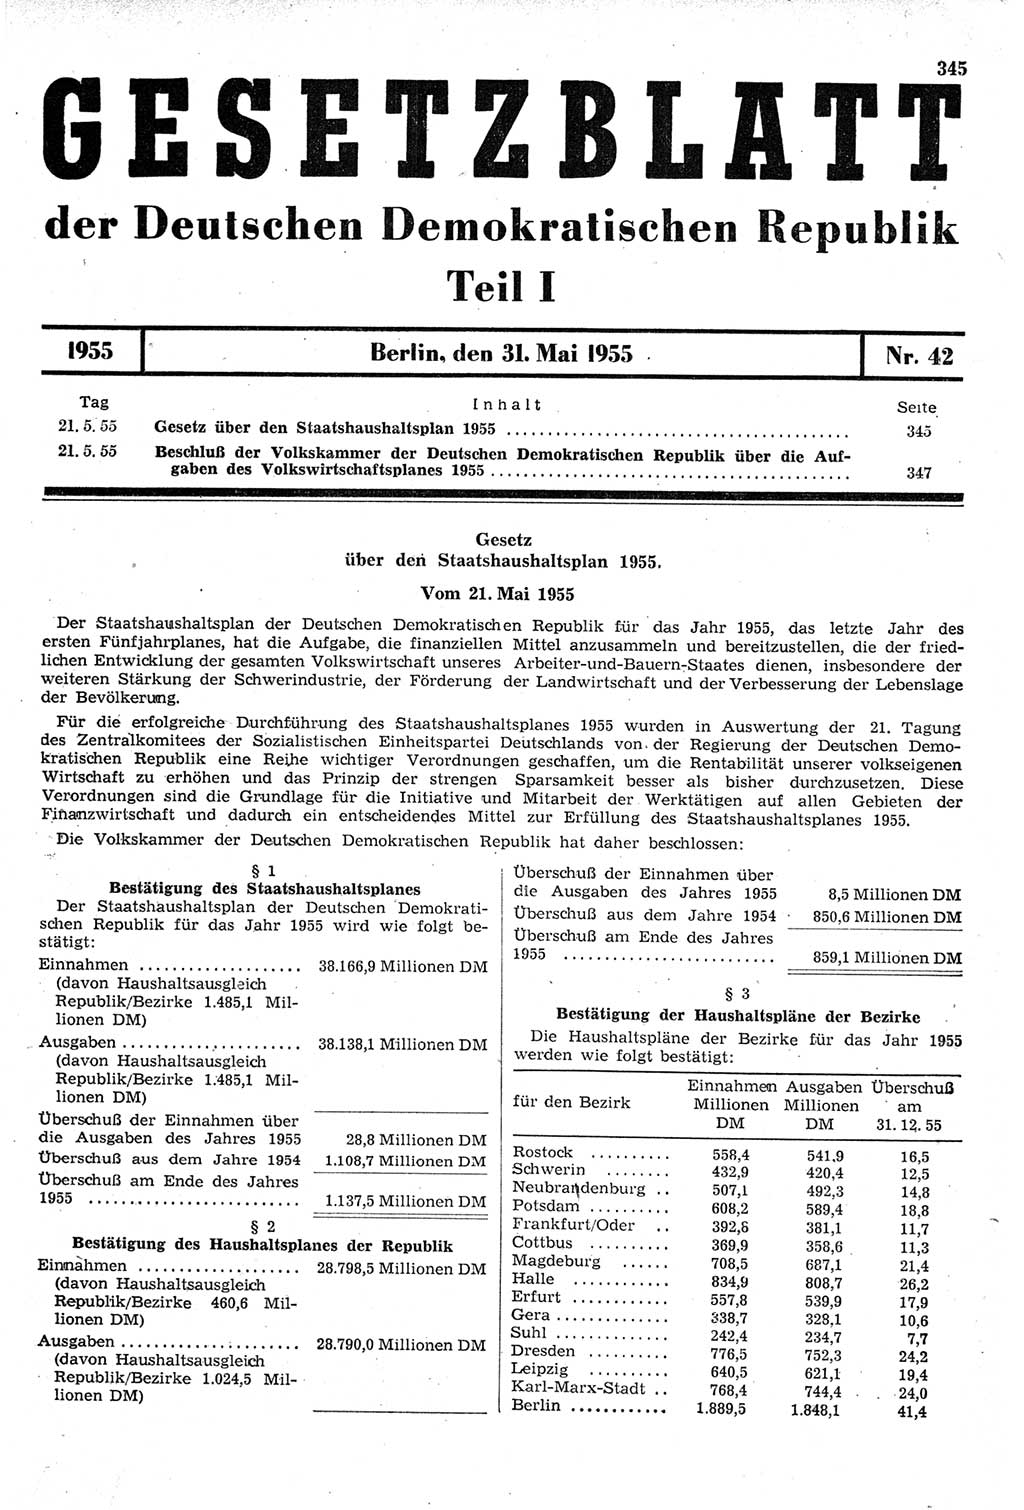 Gesetzblatt (GBl.) der Deutschen Demokratischen Republik (DDR) Teil Ⅰ 1955, Seite 345 (GBl. DDR Ⅰ 1955, S. 345)